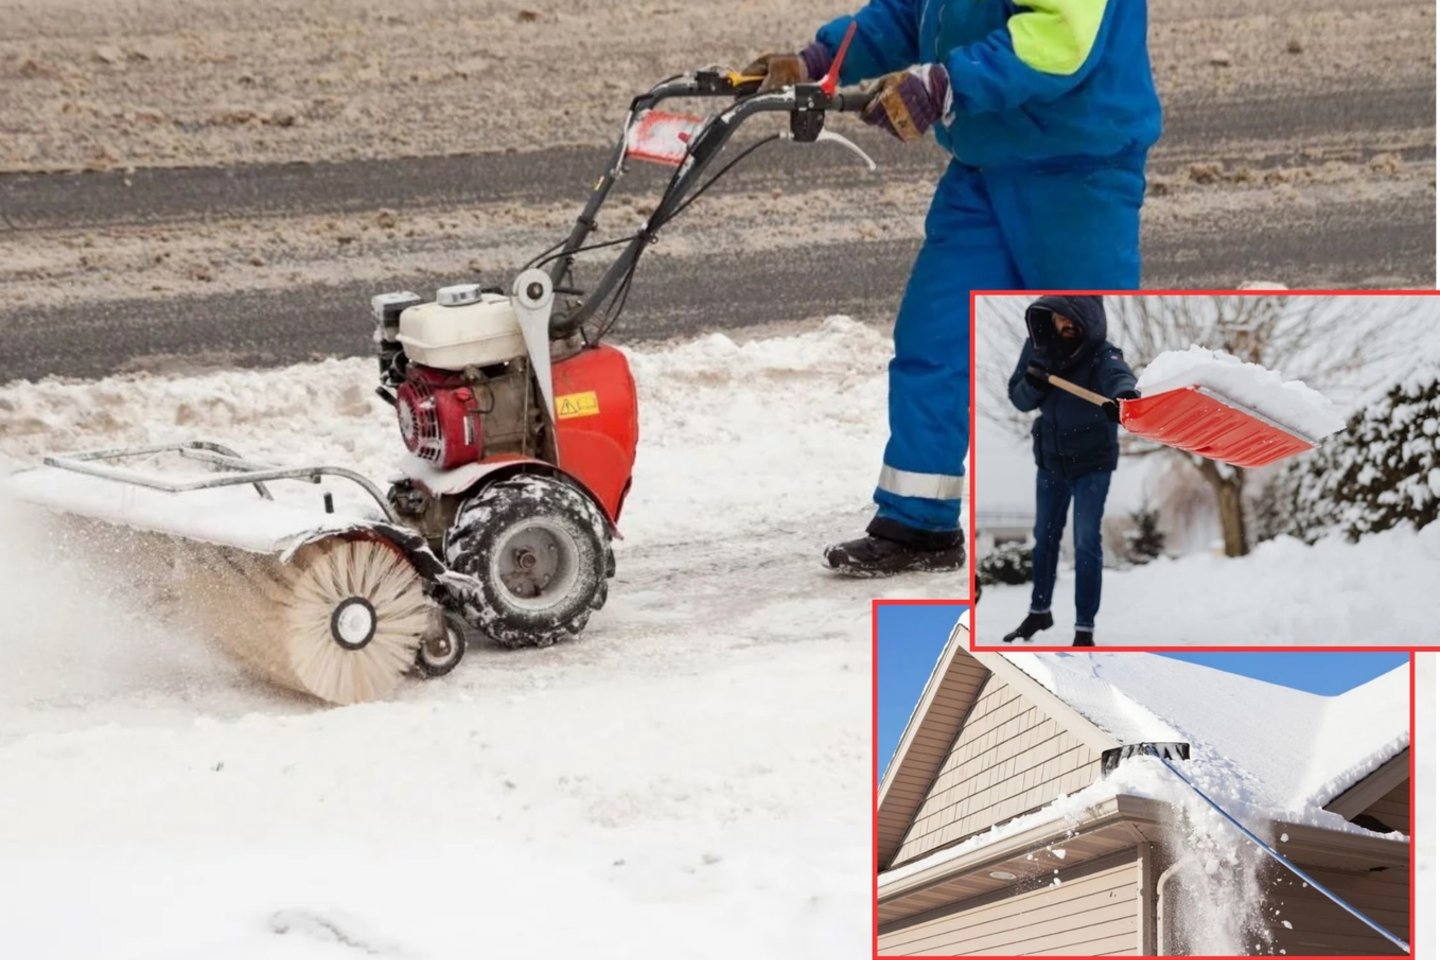 Sniego kasimas neatsiejama veikla žiemos laikotarpiu. Norint efektyviai jį kasti, reikia turėti tinkamą įrankį šiam darbui.<br>„Canva“ nuotr.